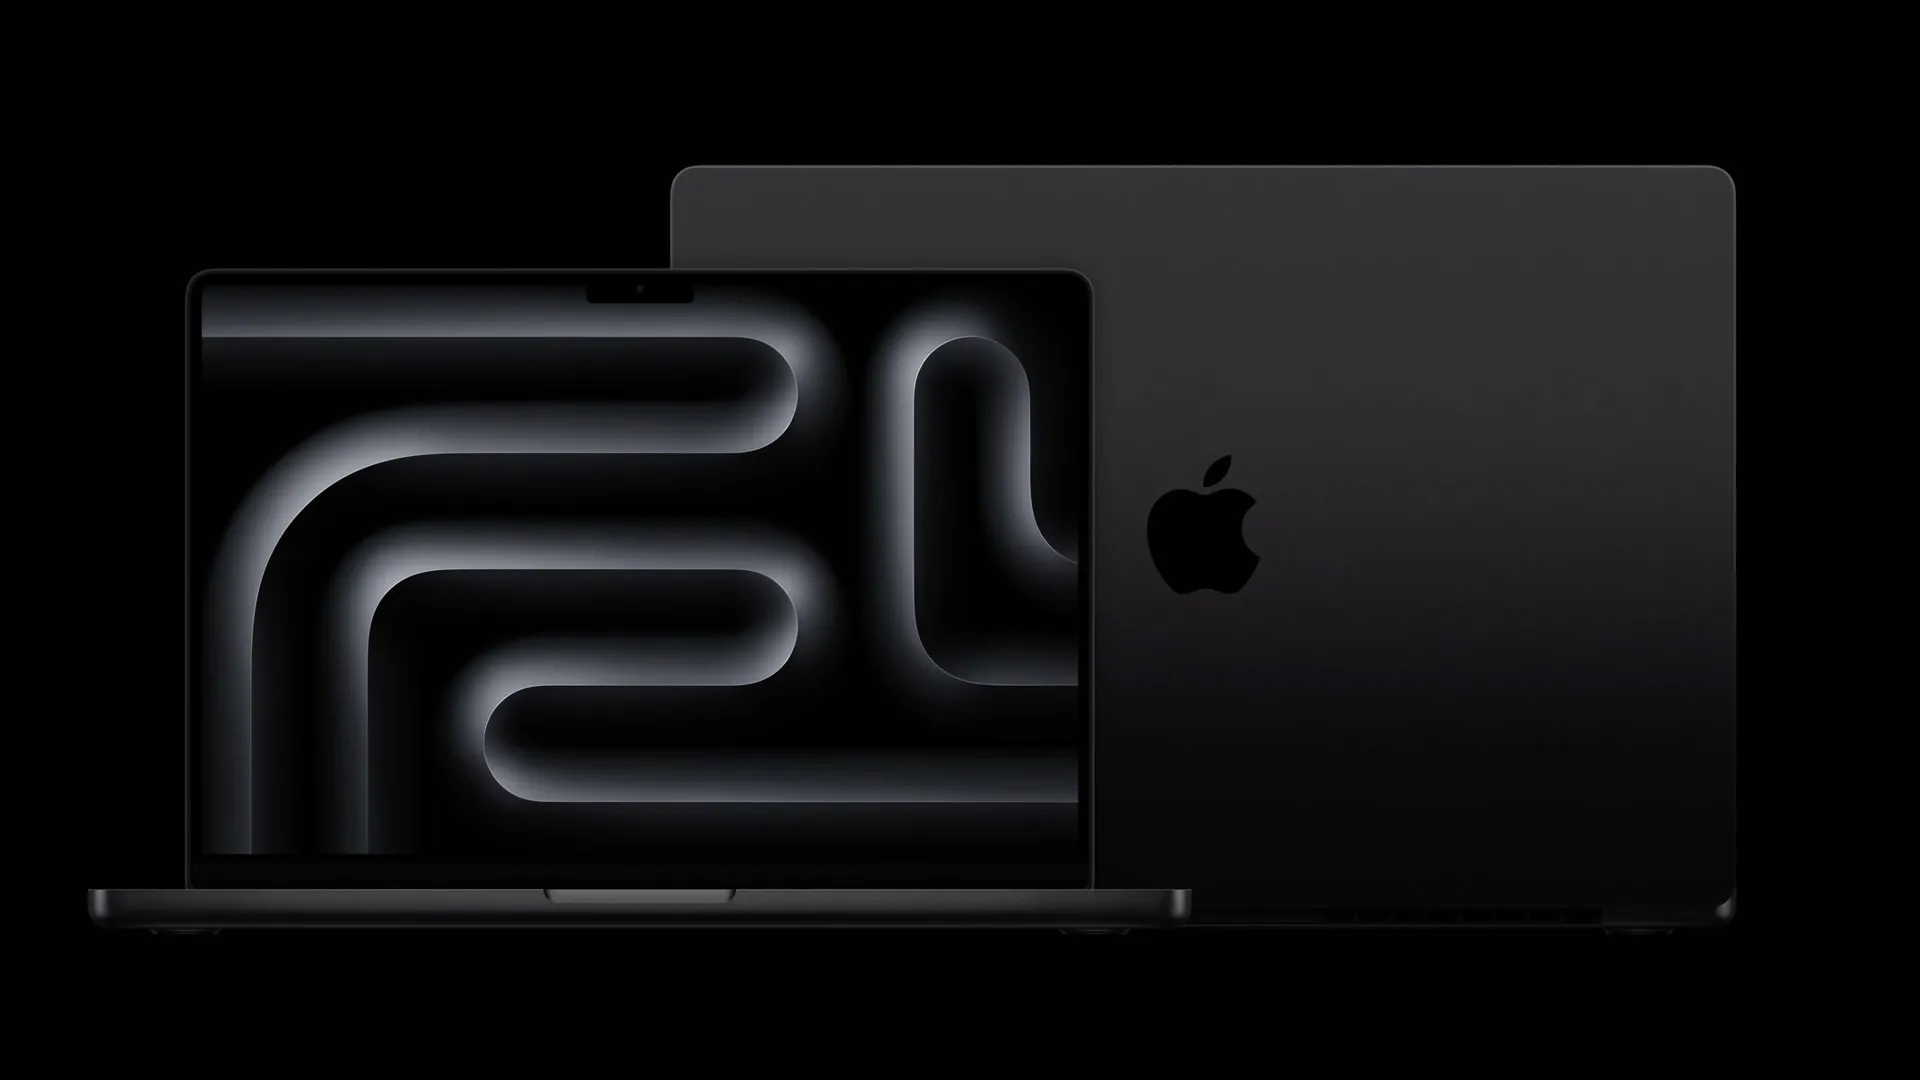 Imagem do novo MacBook Pro em Preto Sideral